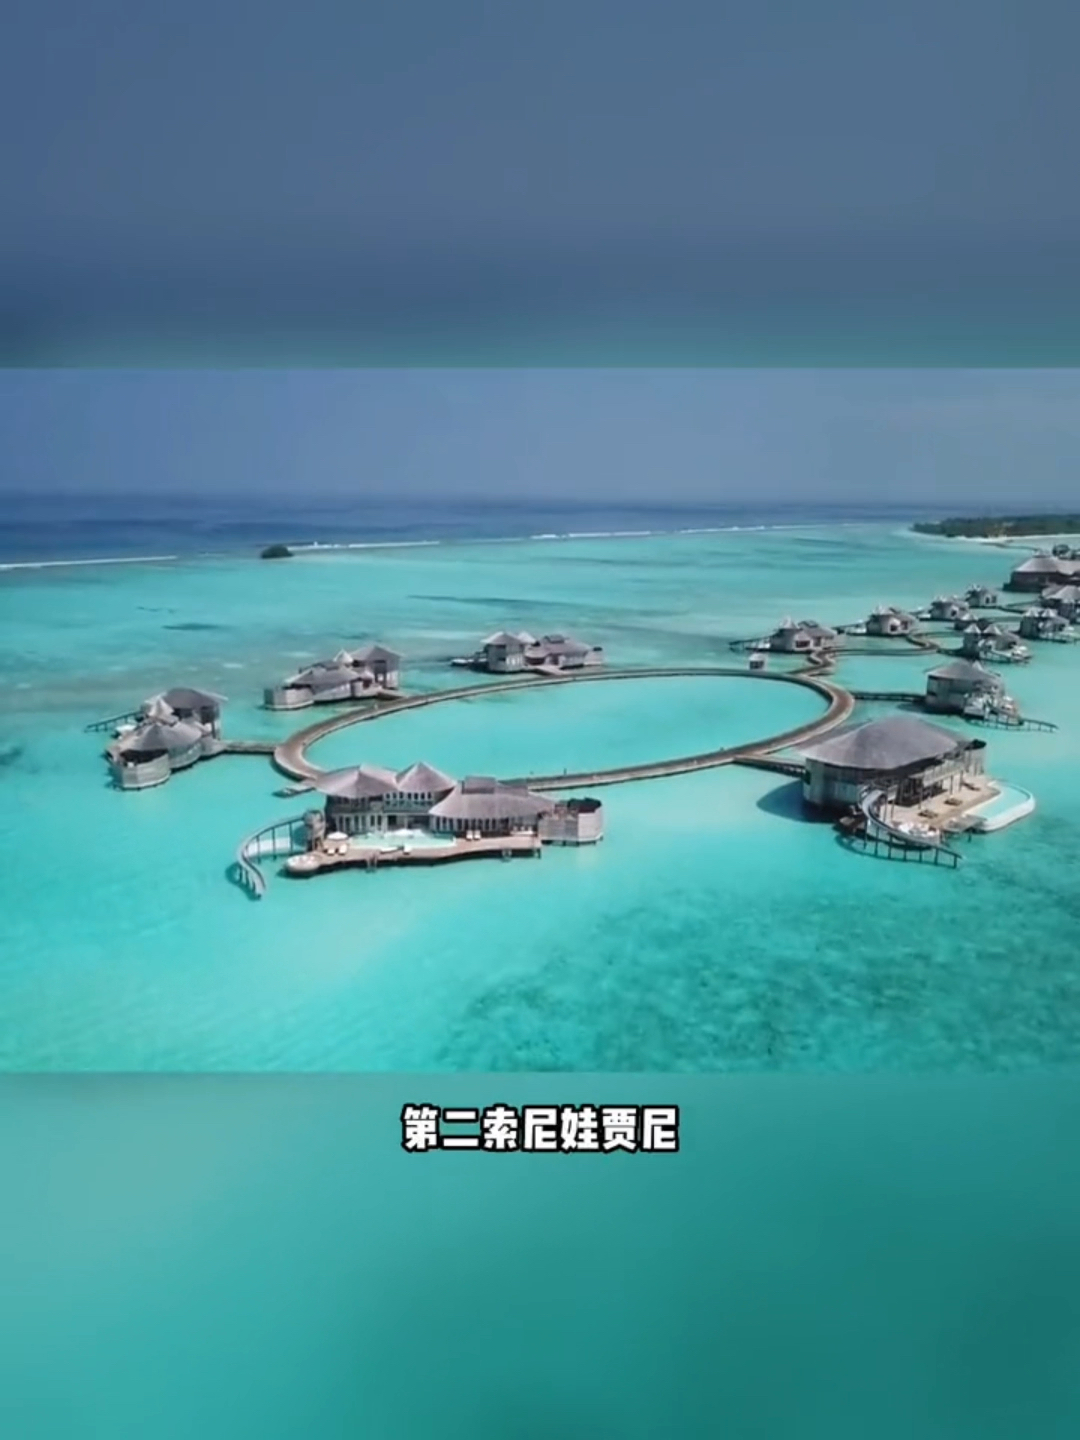 马尔代夫有着自己鲜明的文化特征。  第一，千岛之国。马尔代夫最大特点是岛，而且没有大岛，岛屿平均面积